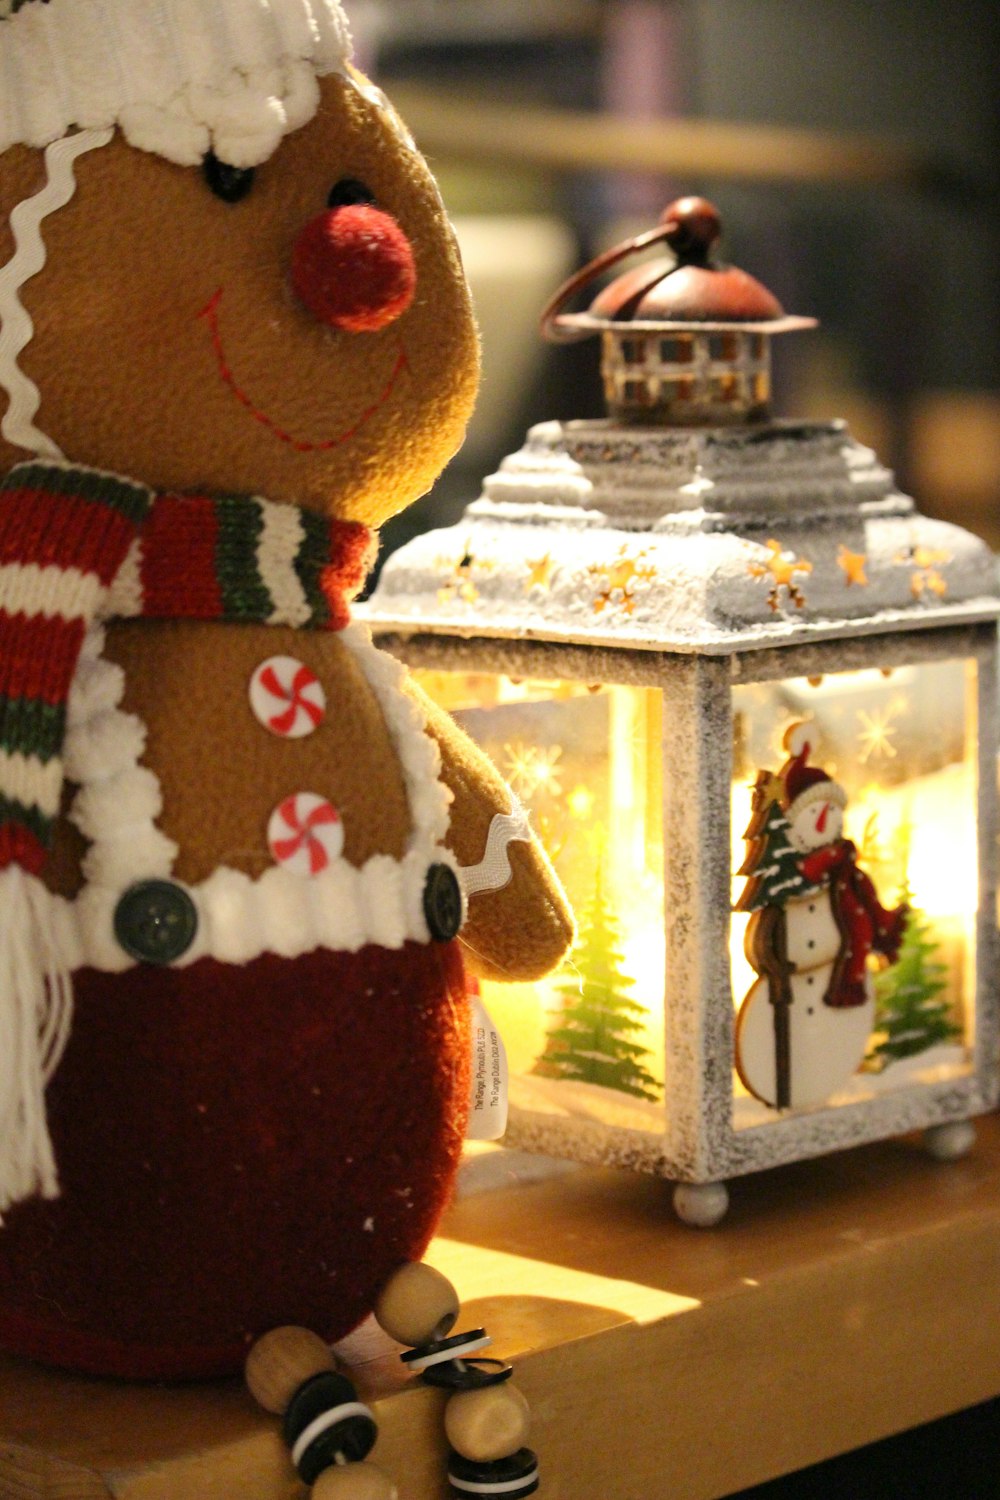 a gingerbread man sitting next to a lit lantern